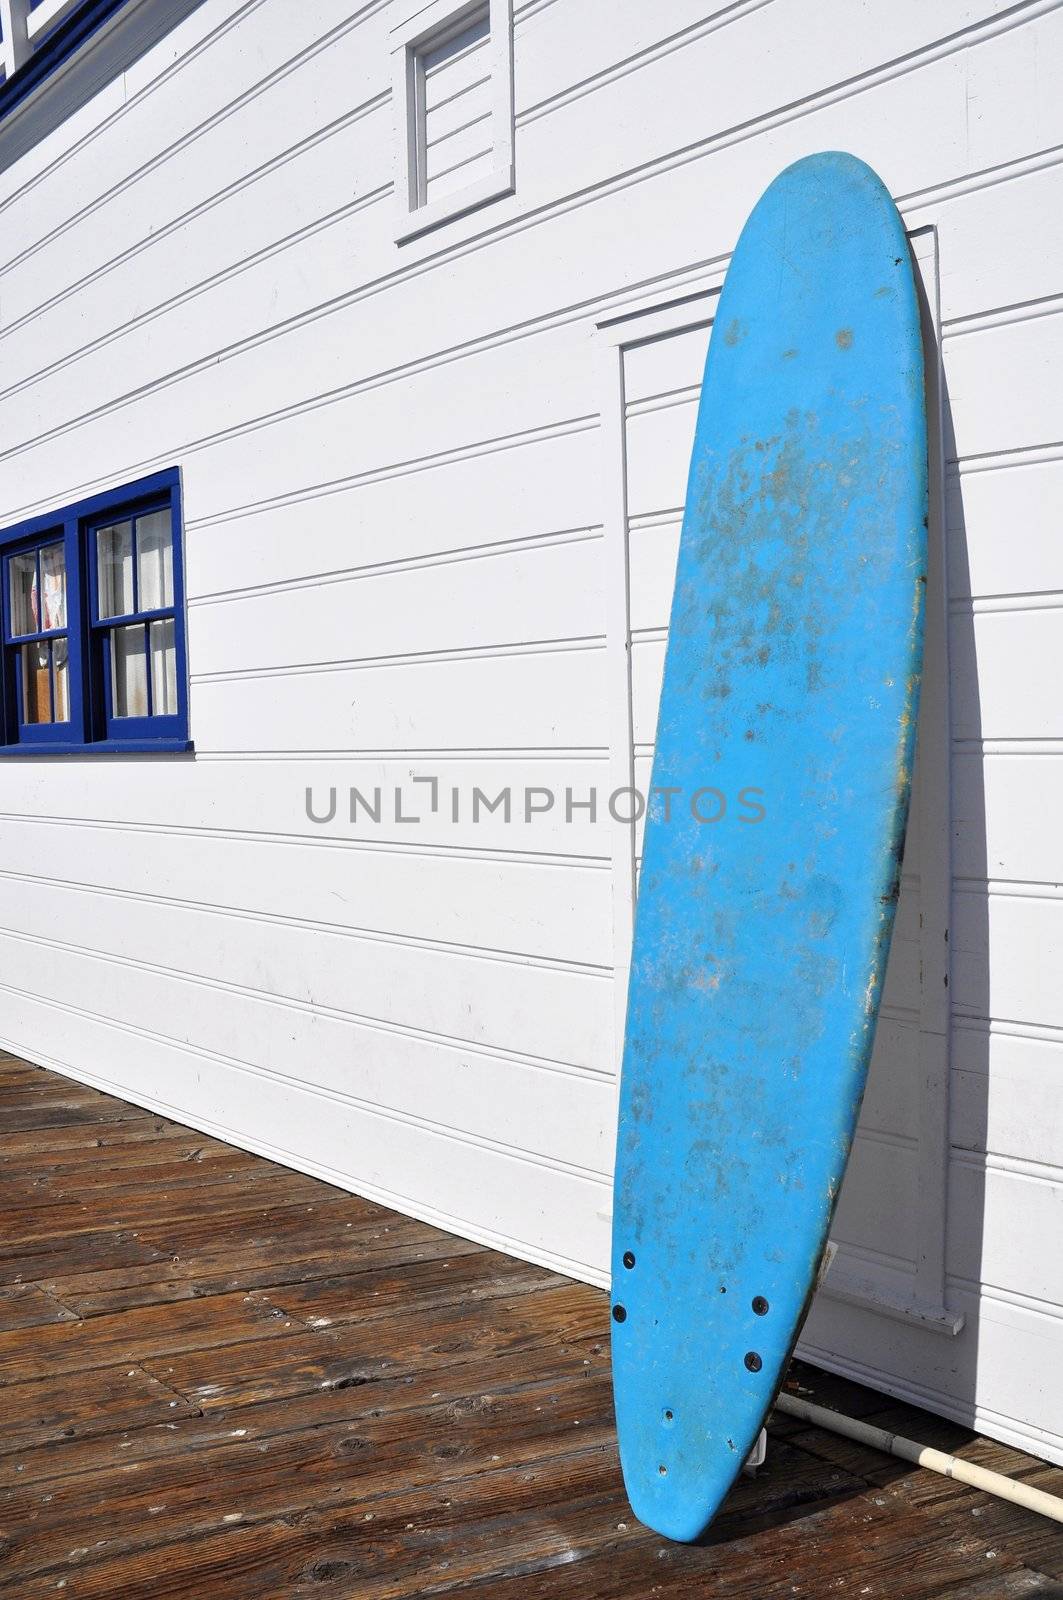 A blue surf board against a white wall